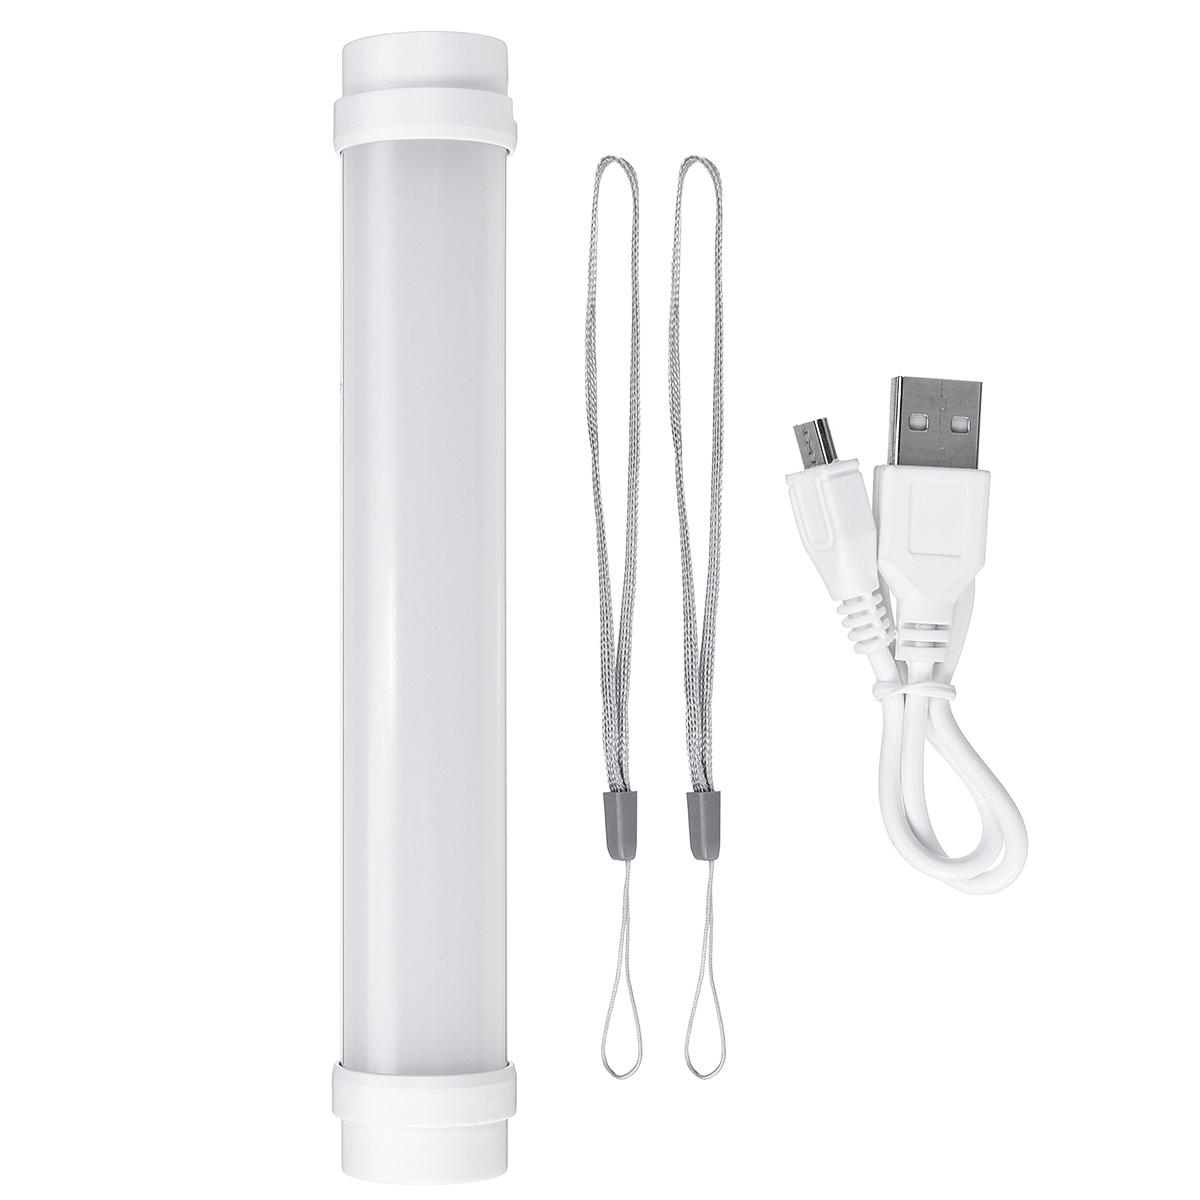 Outdoor-Campingzelt-LED-Lampe, Notfall-Röhrenblitzlicht und USB-Ladegerät 1800mAh Power Bank